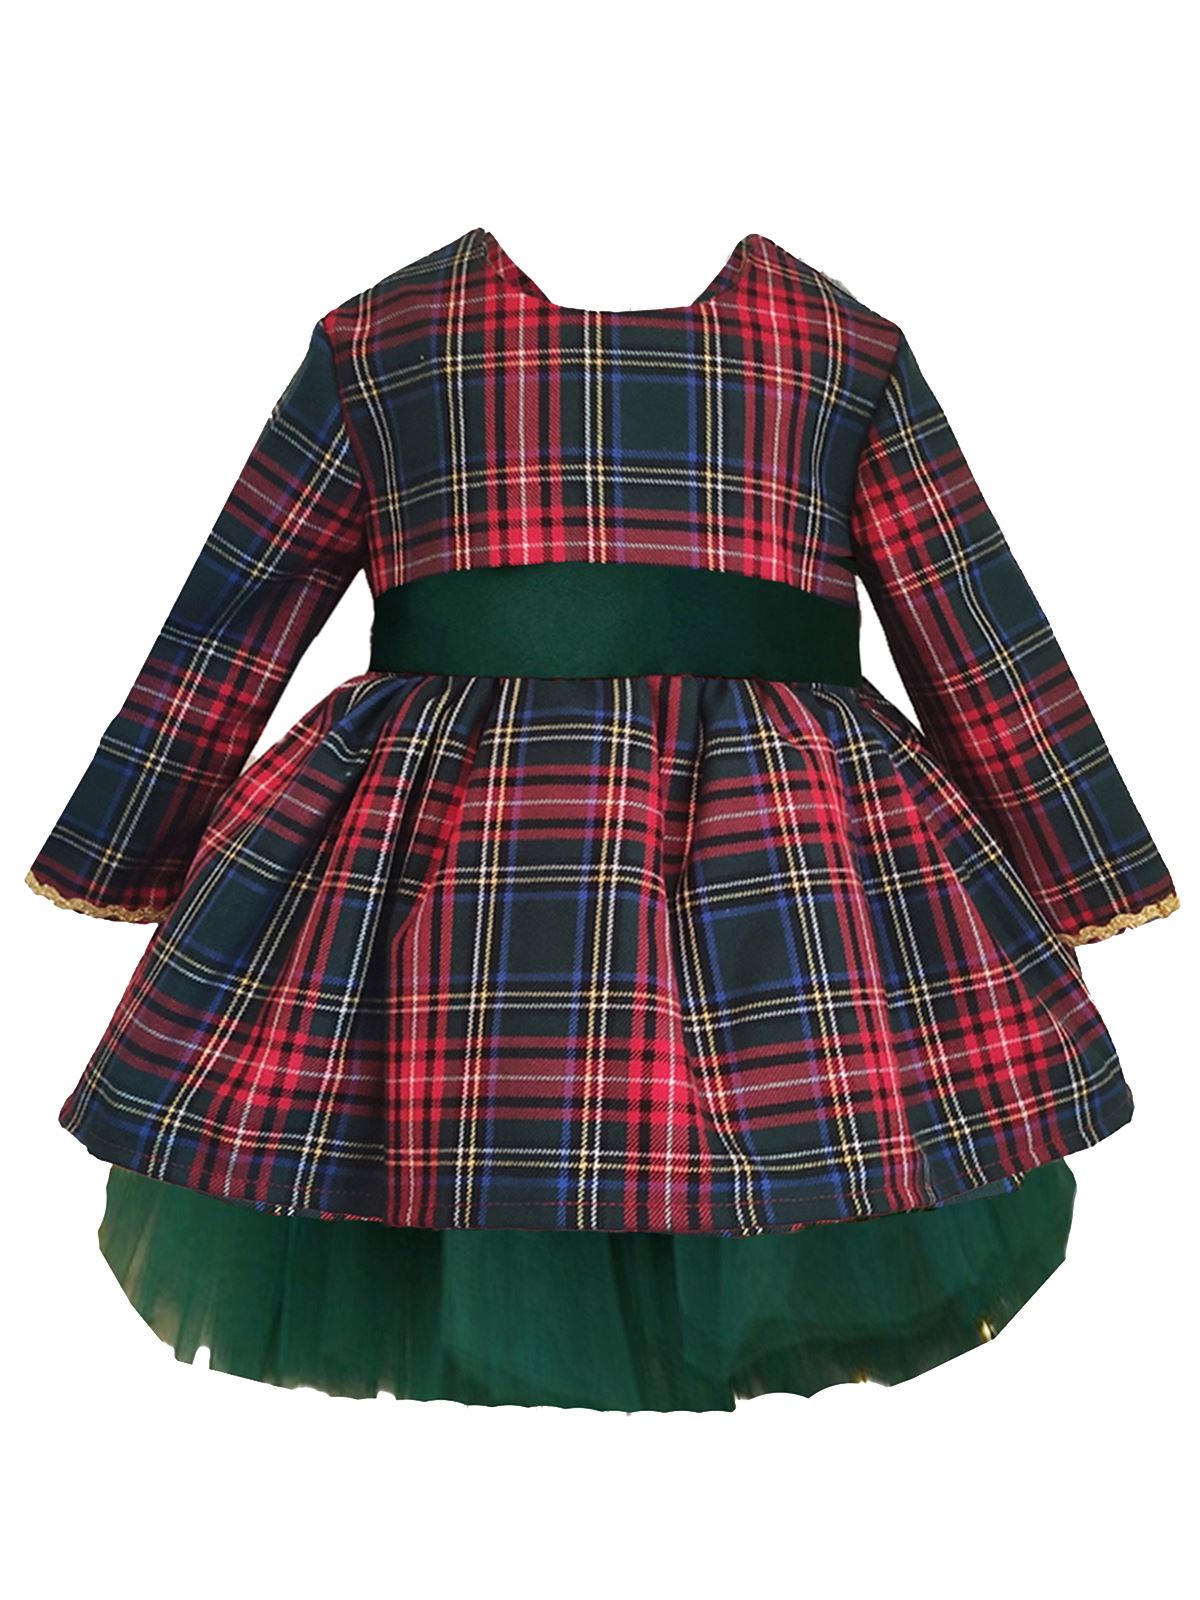 Shecco Babba Kız Çocuk Tütü Elbise Taç Takım Fiyonk 6-10 Yaş Yeşil